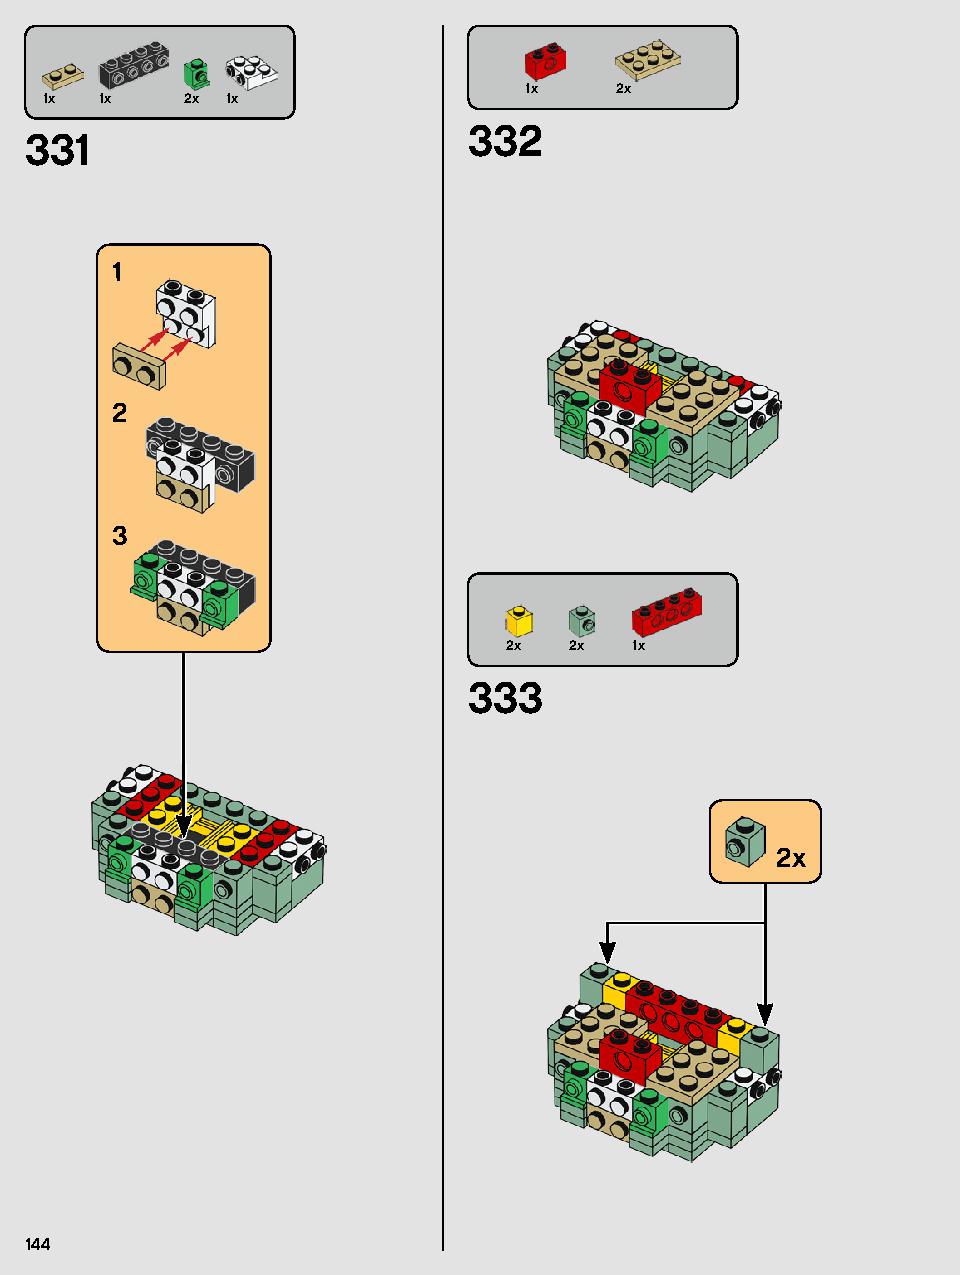 ヨーダ™ 75255 レゴの商品情報 レゴの説明書・組立方法 144 page